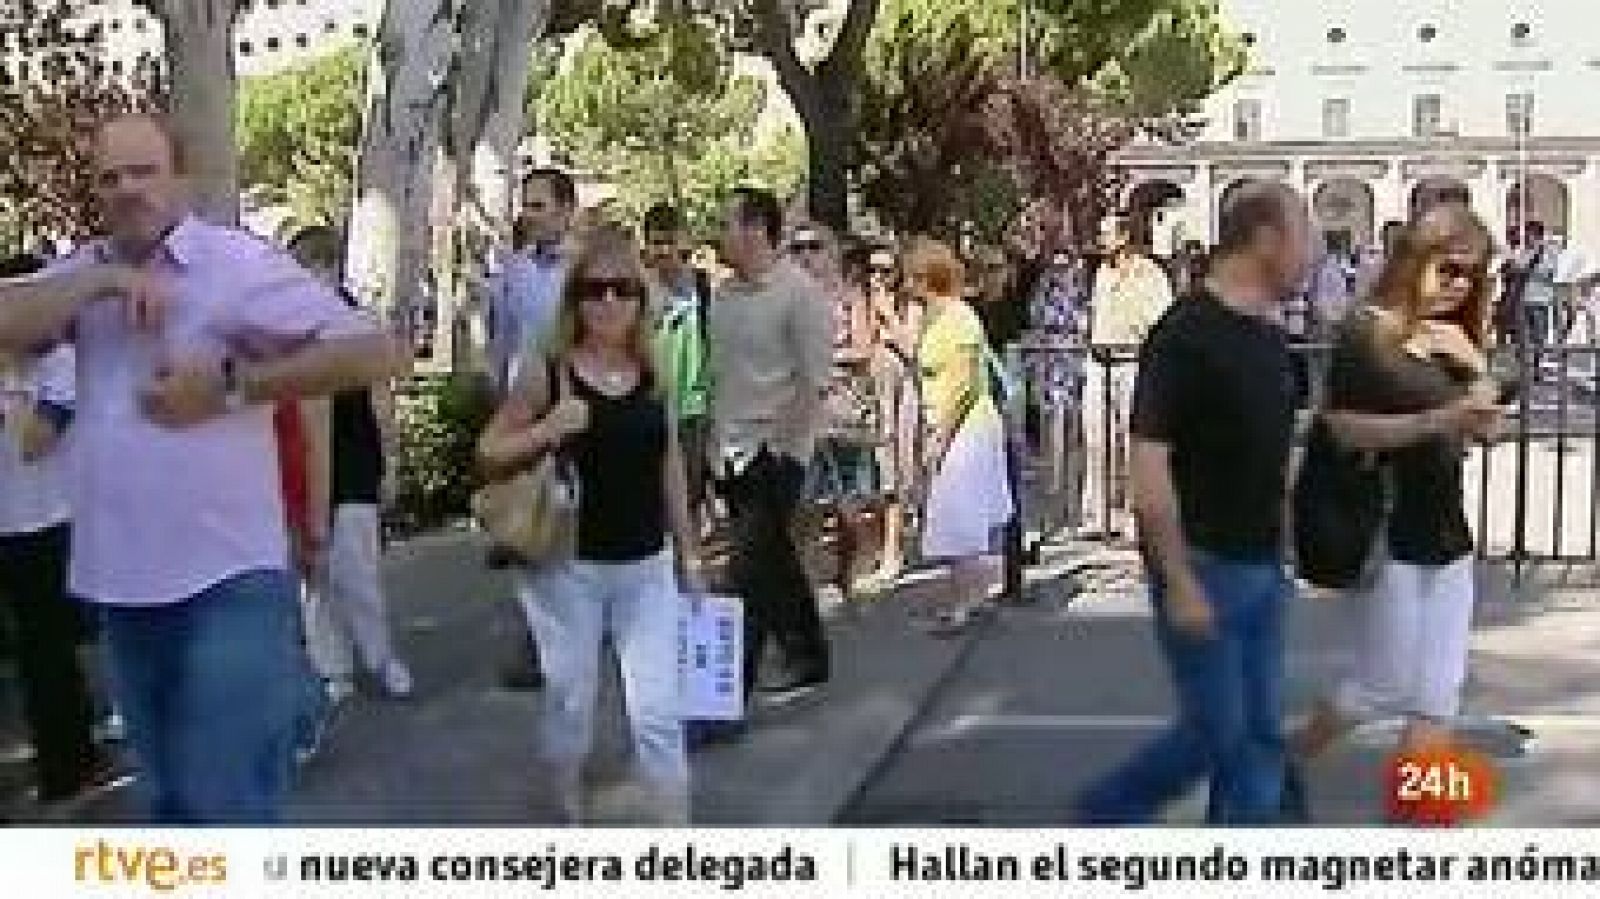  Protestas de los funcionarios por los recortes aprobados por el Gobierno de Mariano Rajoy